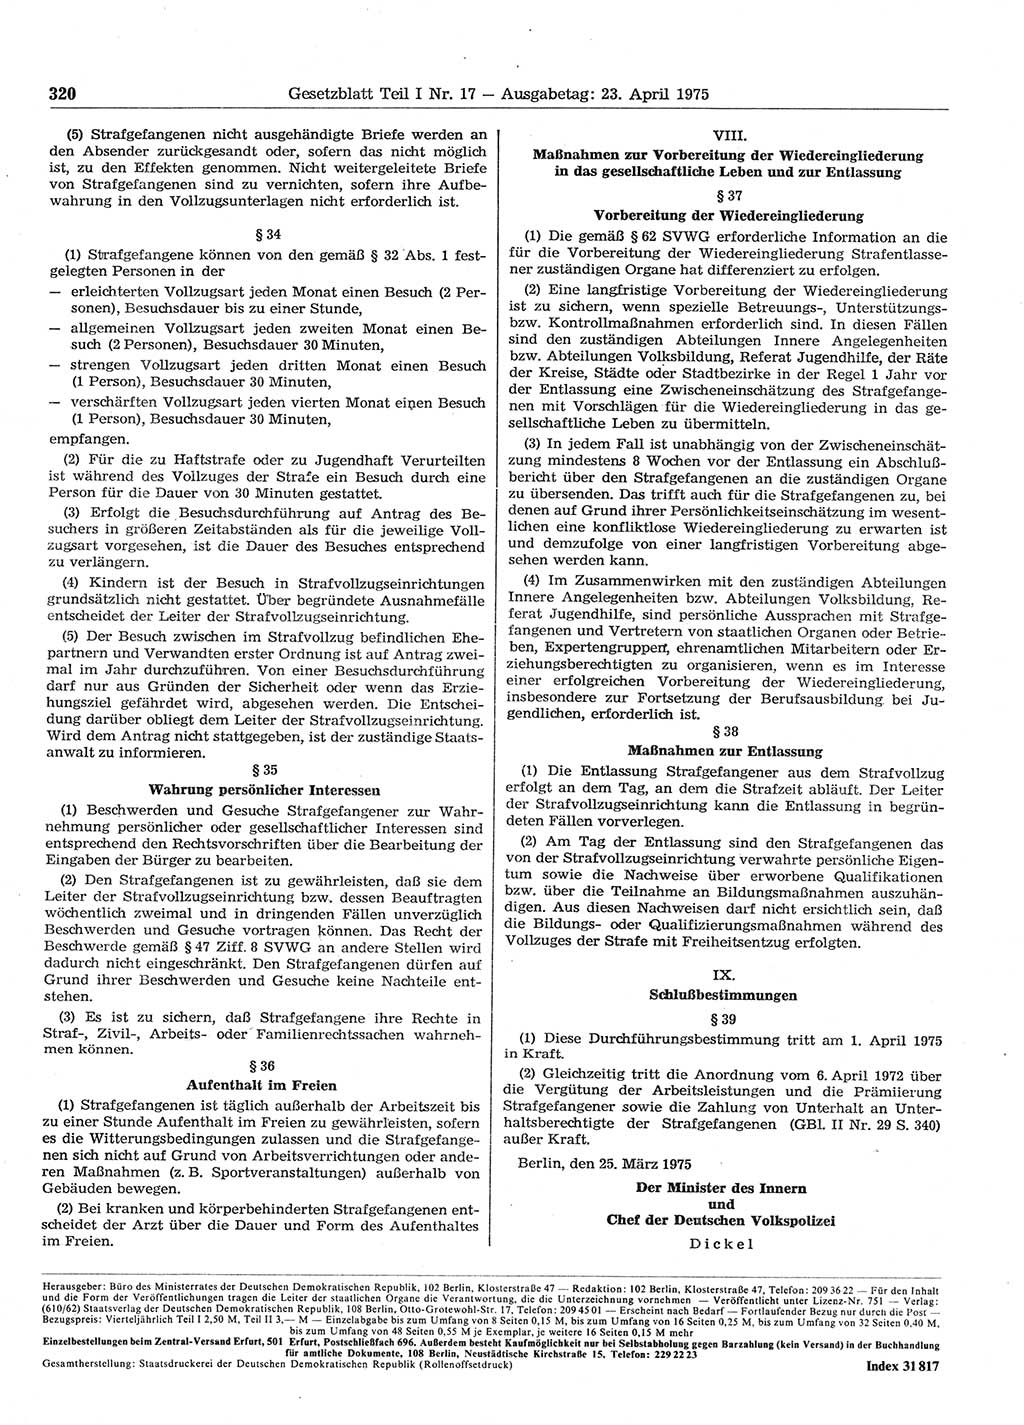 Gesetzblatt (GBl.) der Deutschen Demokratischen Republik (DDR) Teil Ⅰ 1975, Seite 320 (GBl. DDR Ⅰ 1975, S. 320)